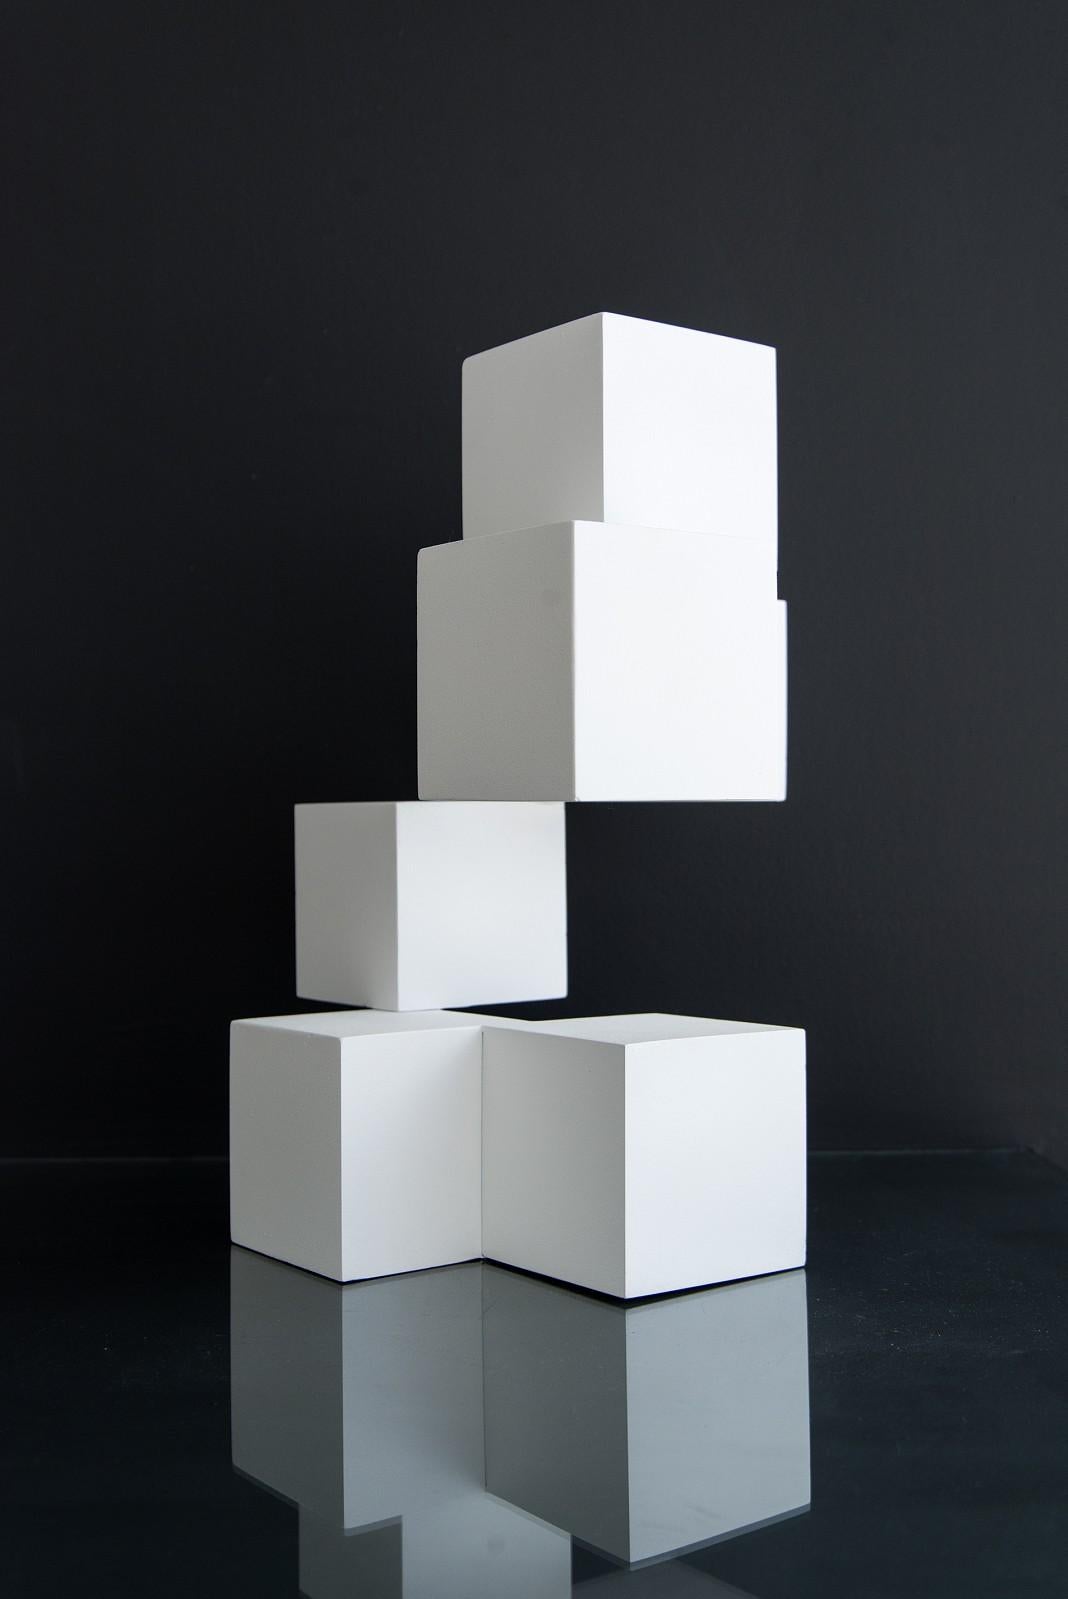 Fragile - blanche, géométrie entrecroisée, sculpture moderne en aluminium - Contemporain Sculpture par Philippe Pallafray